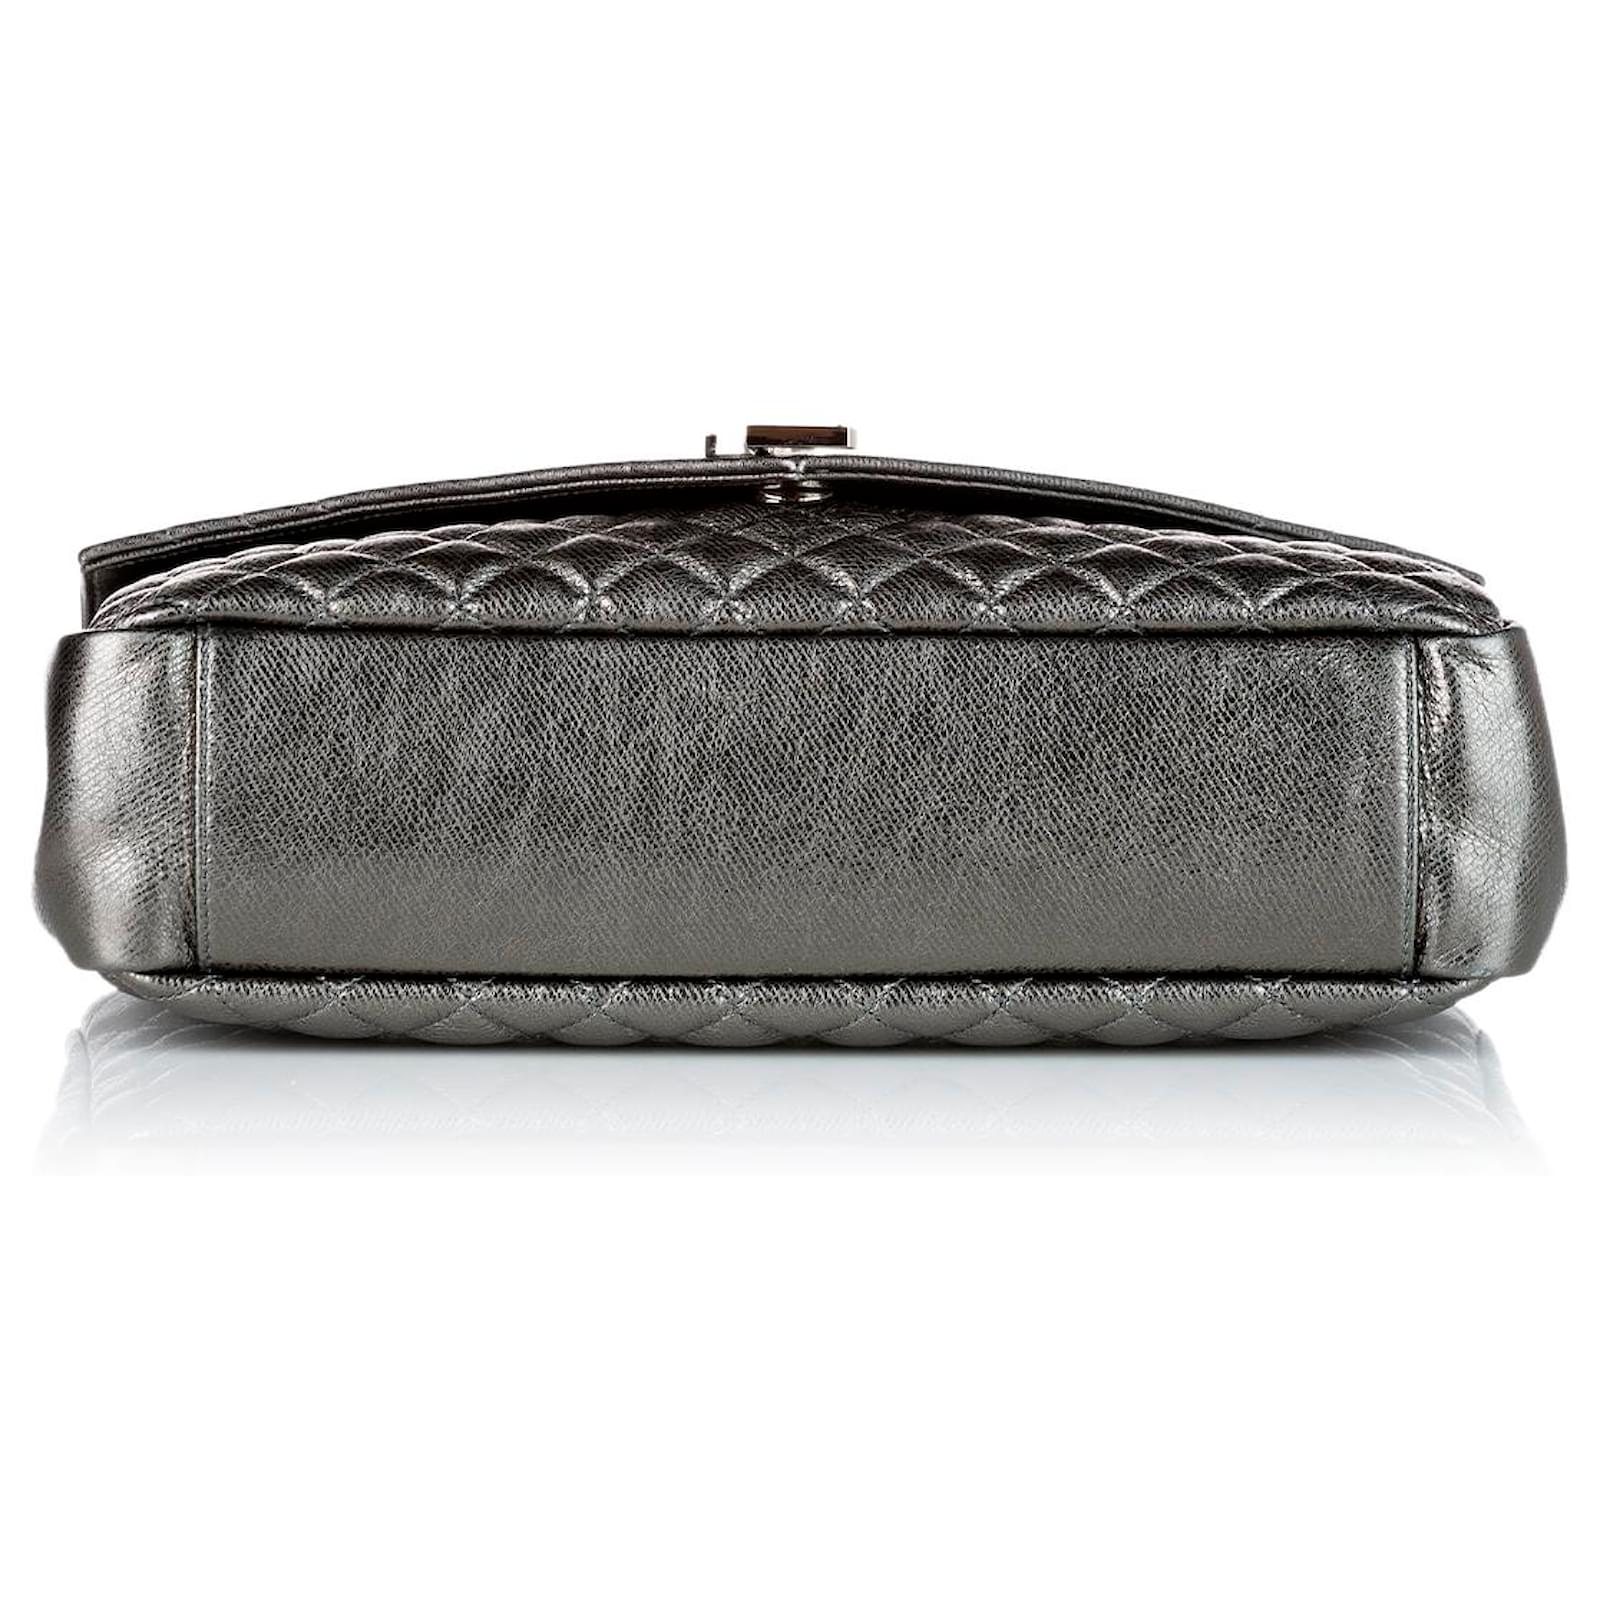 Givenchy Pandora Shoulder bag 359970, ysl envelope bag review and size  guide